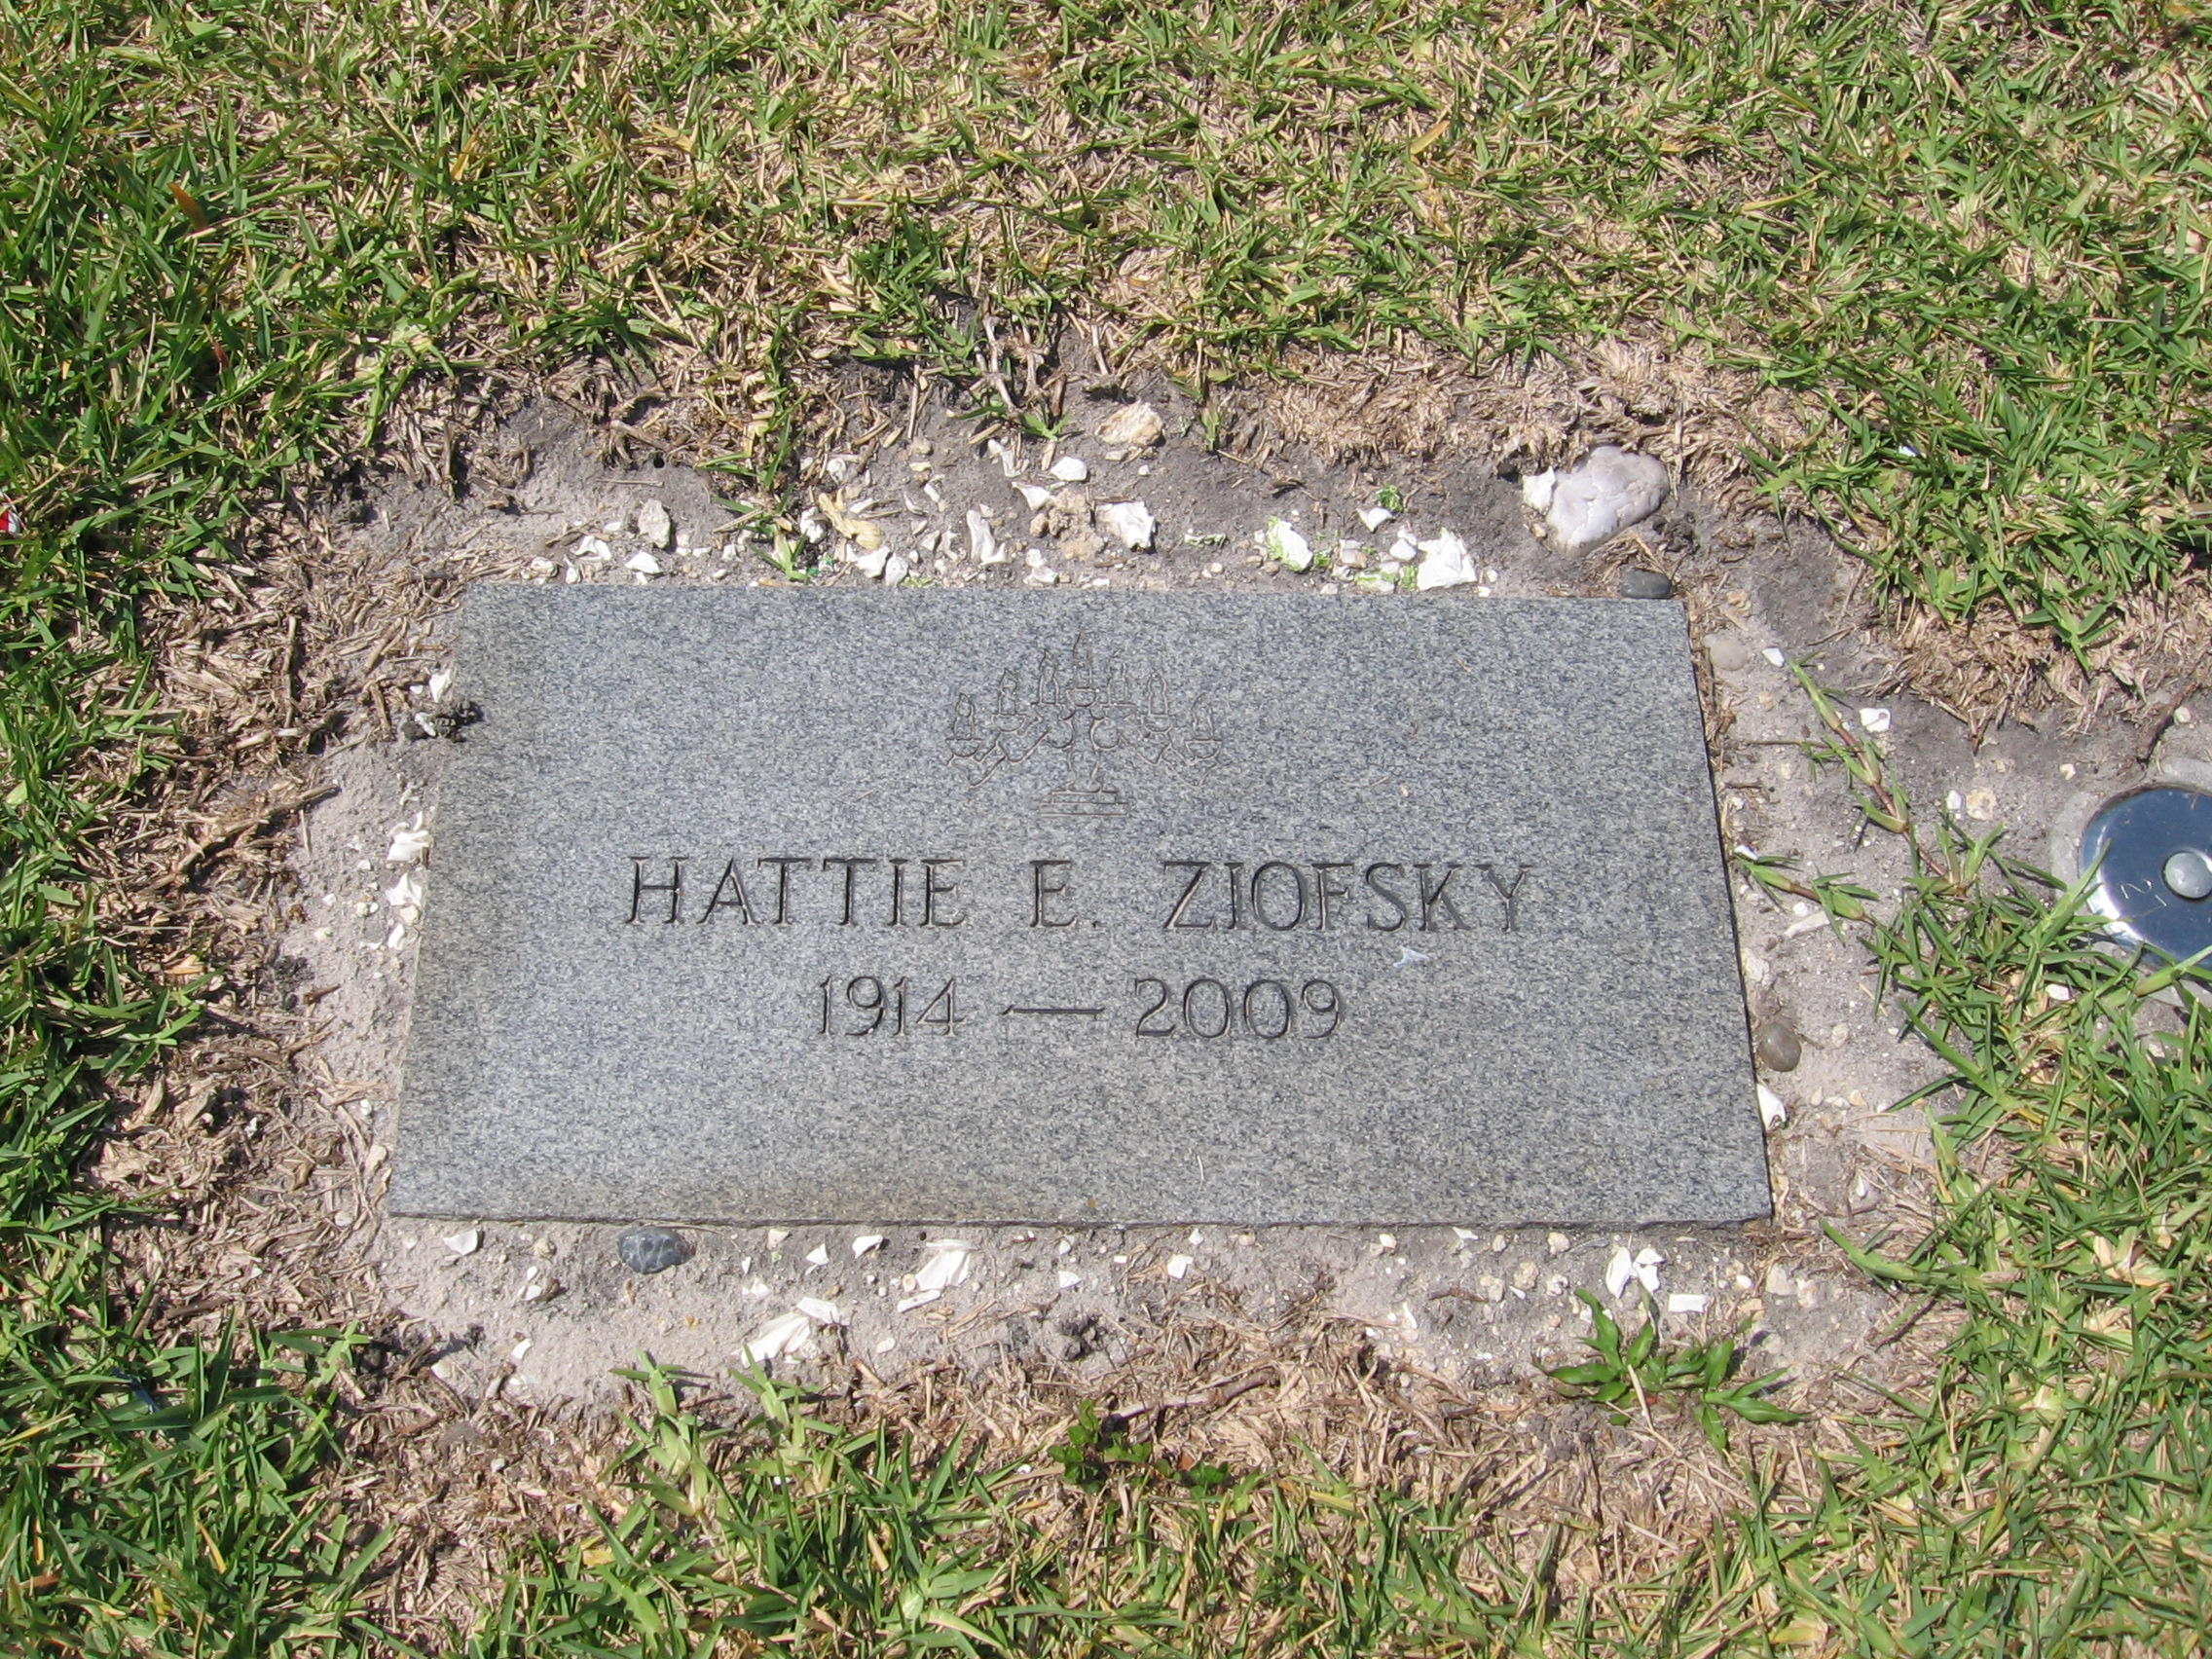 Hattie E Ziofsky